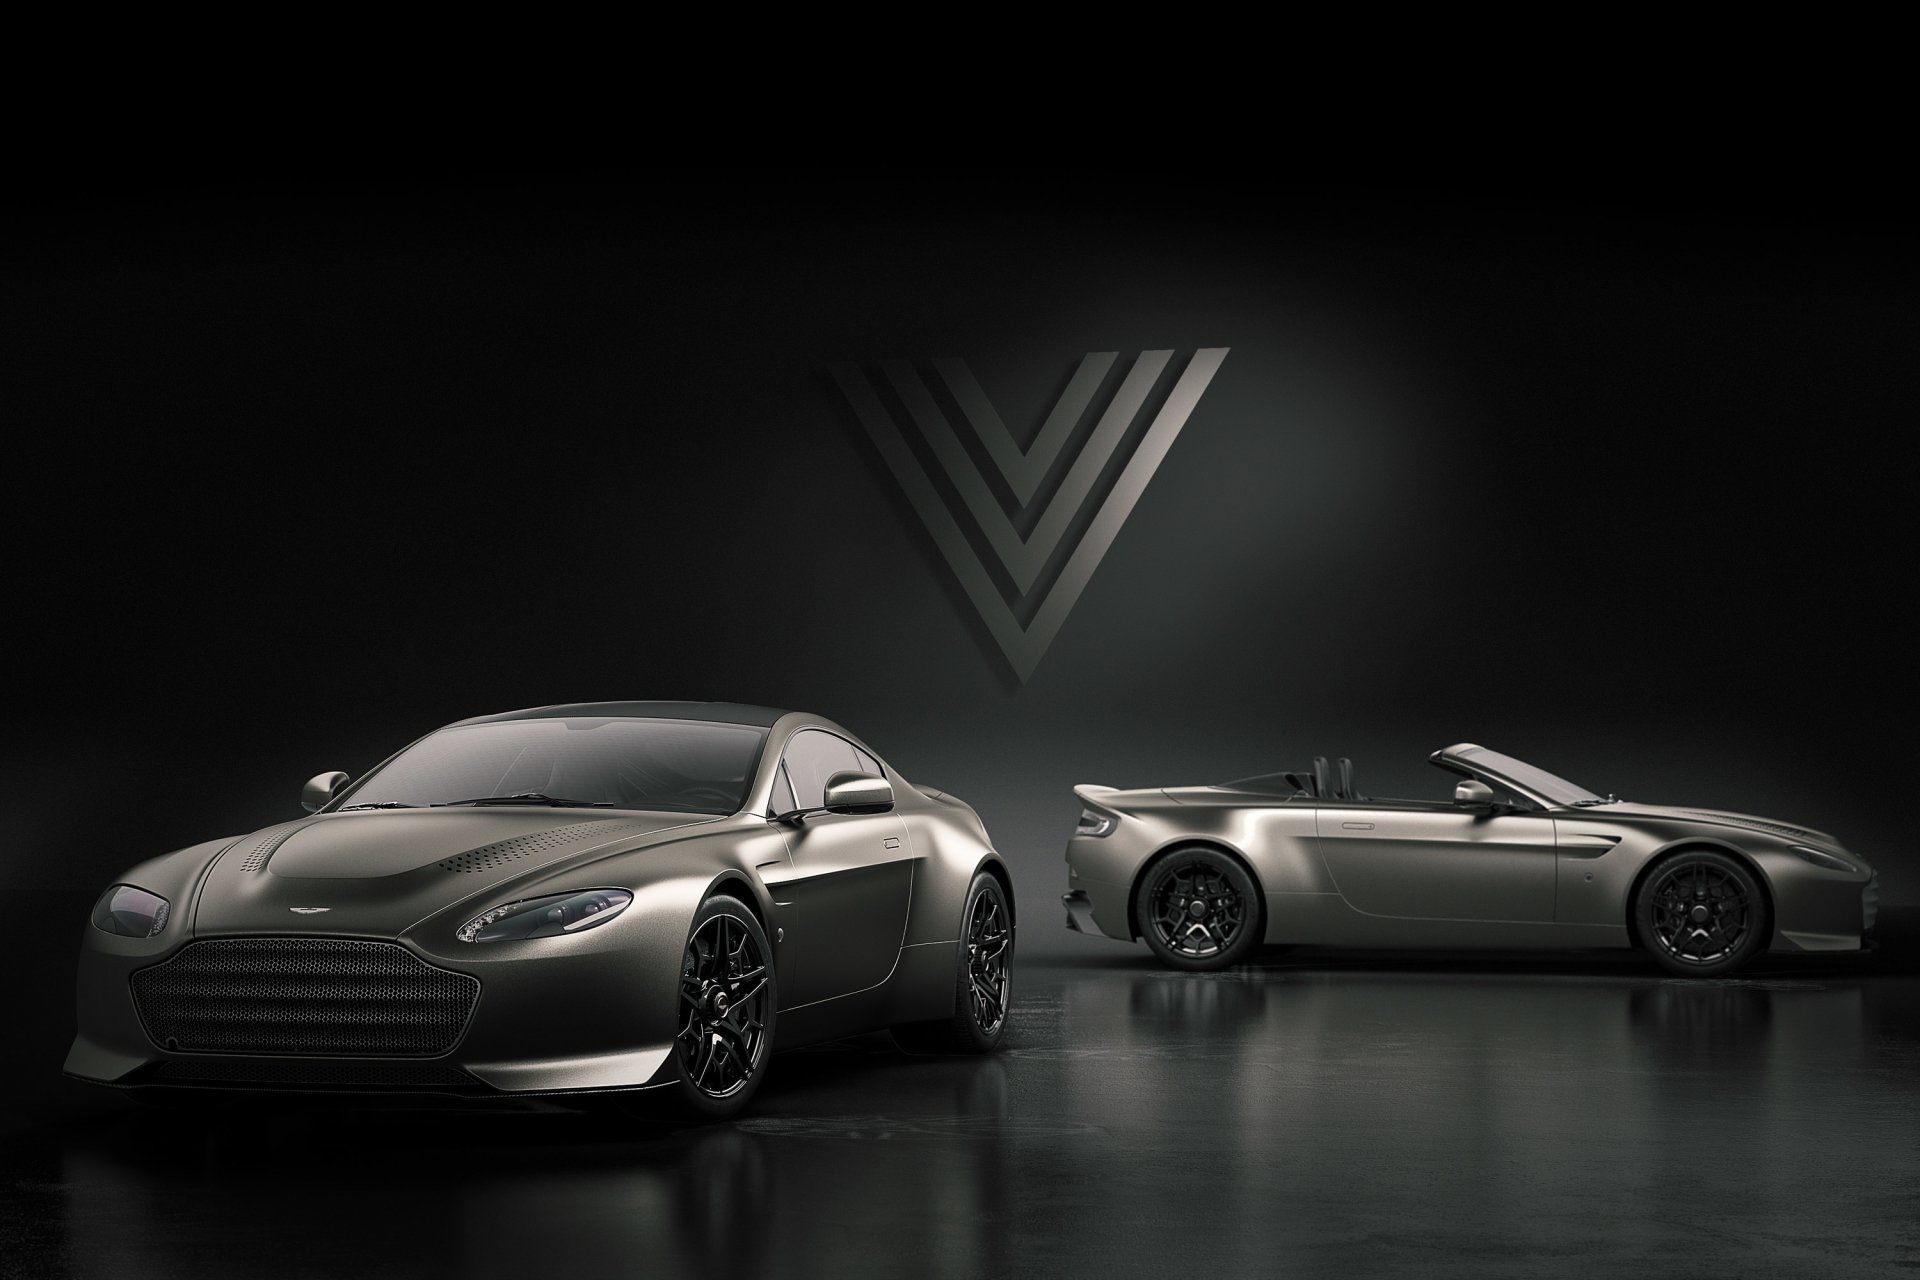 Aston Martin V12 Vantage V600 Wallpapers